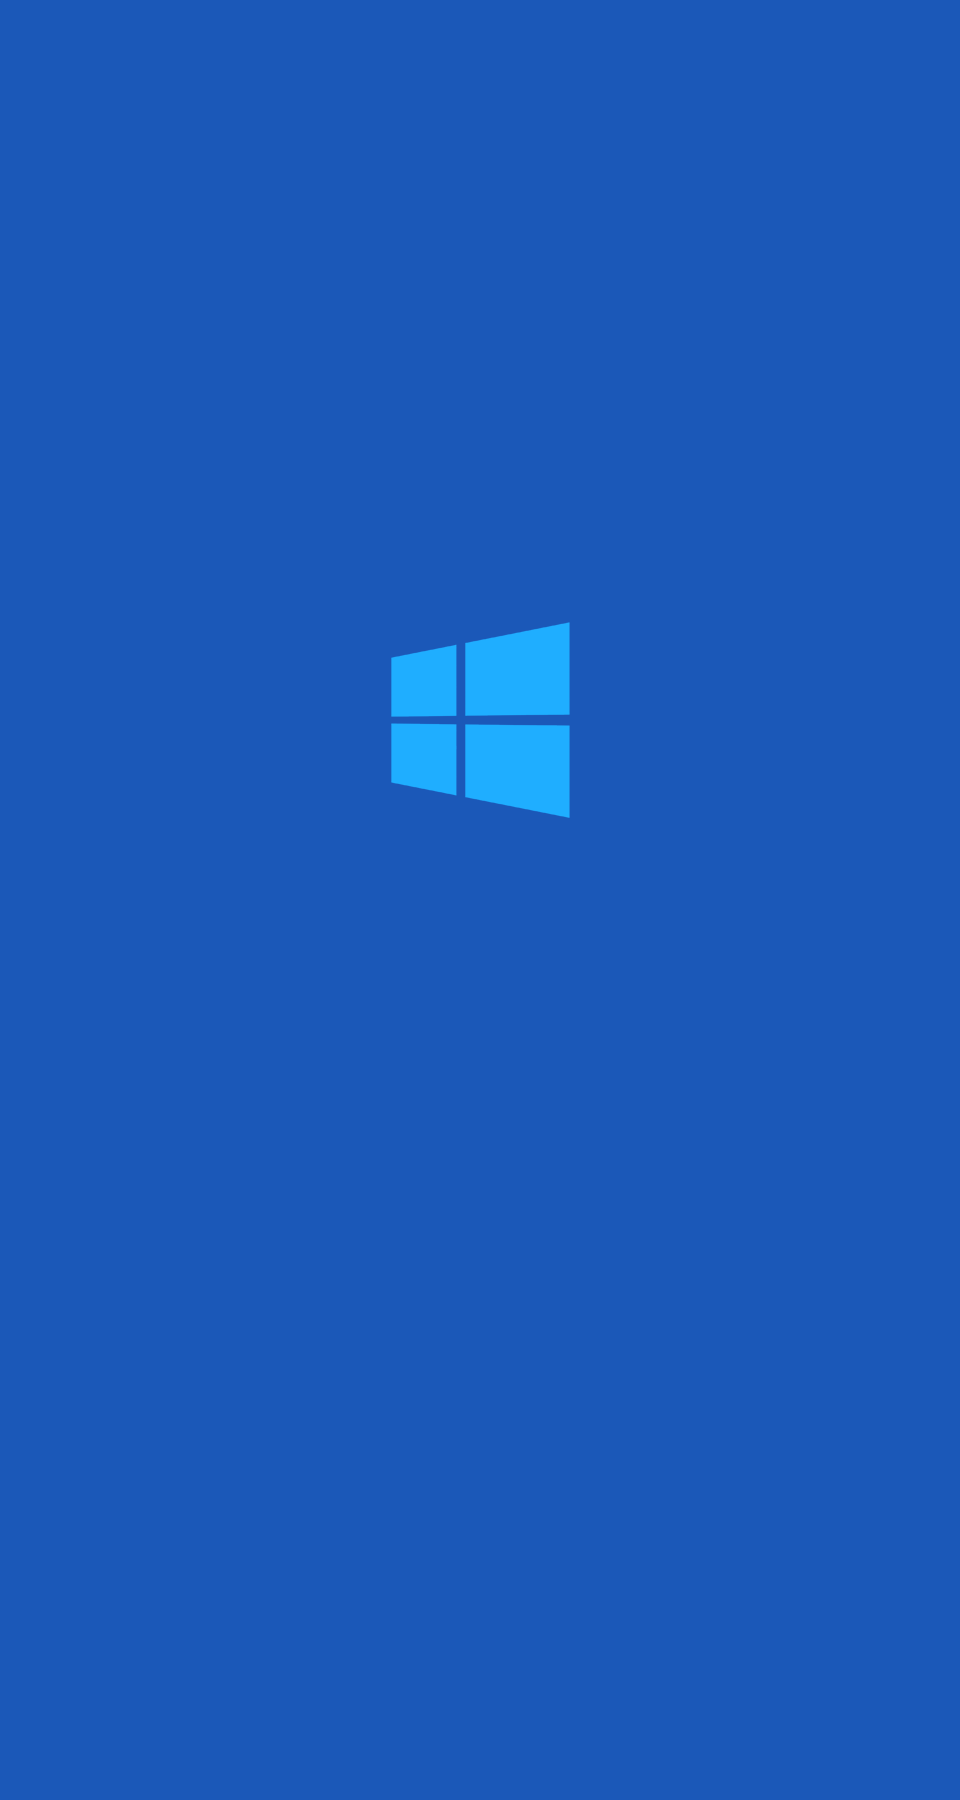 Hình nền Windows Phone màu xanh trên WallpaperDog: Nếu bạn là một người yêu thích màu xanh, hãy truy cập tới wallpaperDog và tìm kiếm những hình nền Windows Phone màu xanh tuyệt đẹp. Những hình ảnh sẽ khiến bạn không thể rời mắt khỏi màn hình điện thoại.